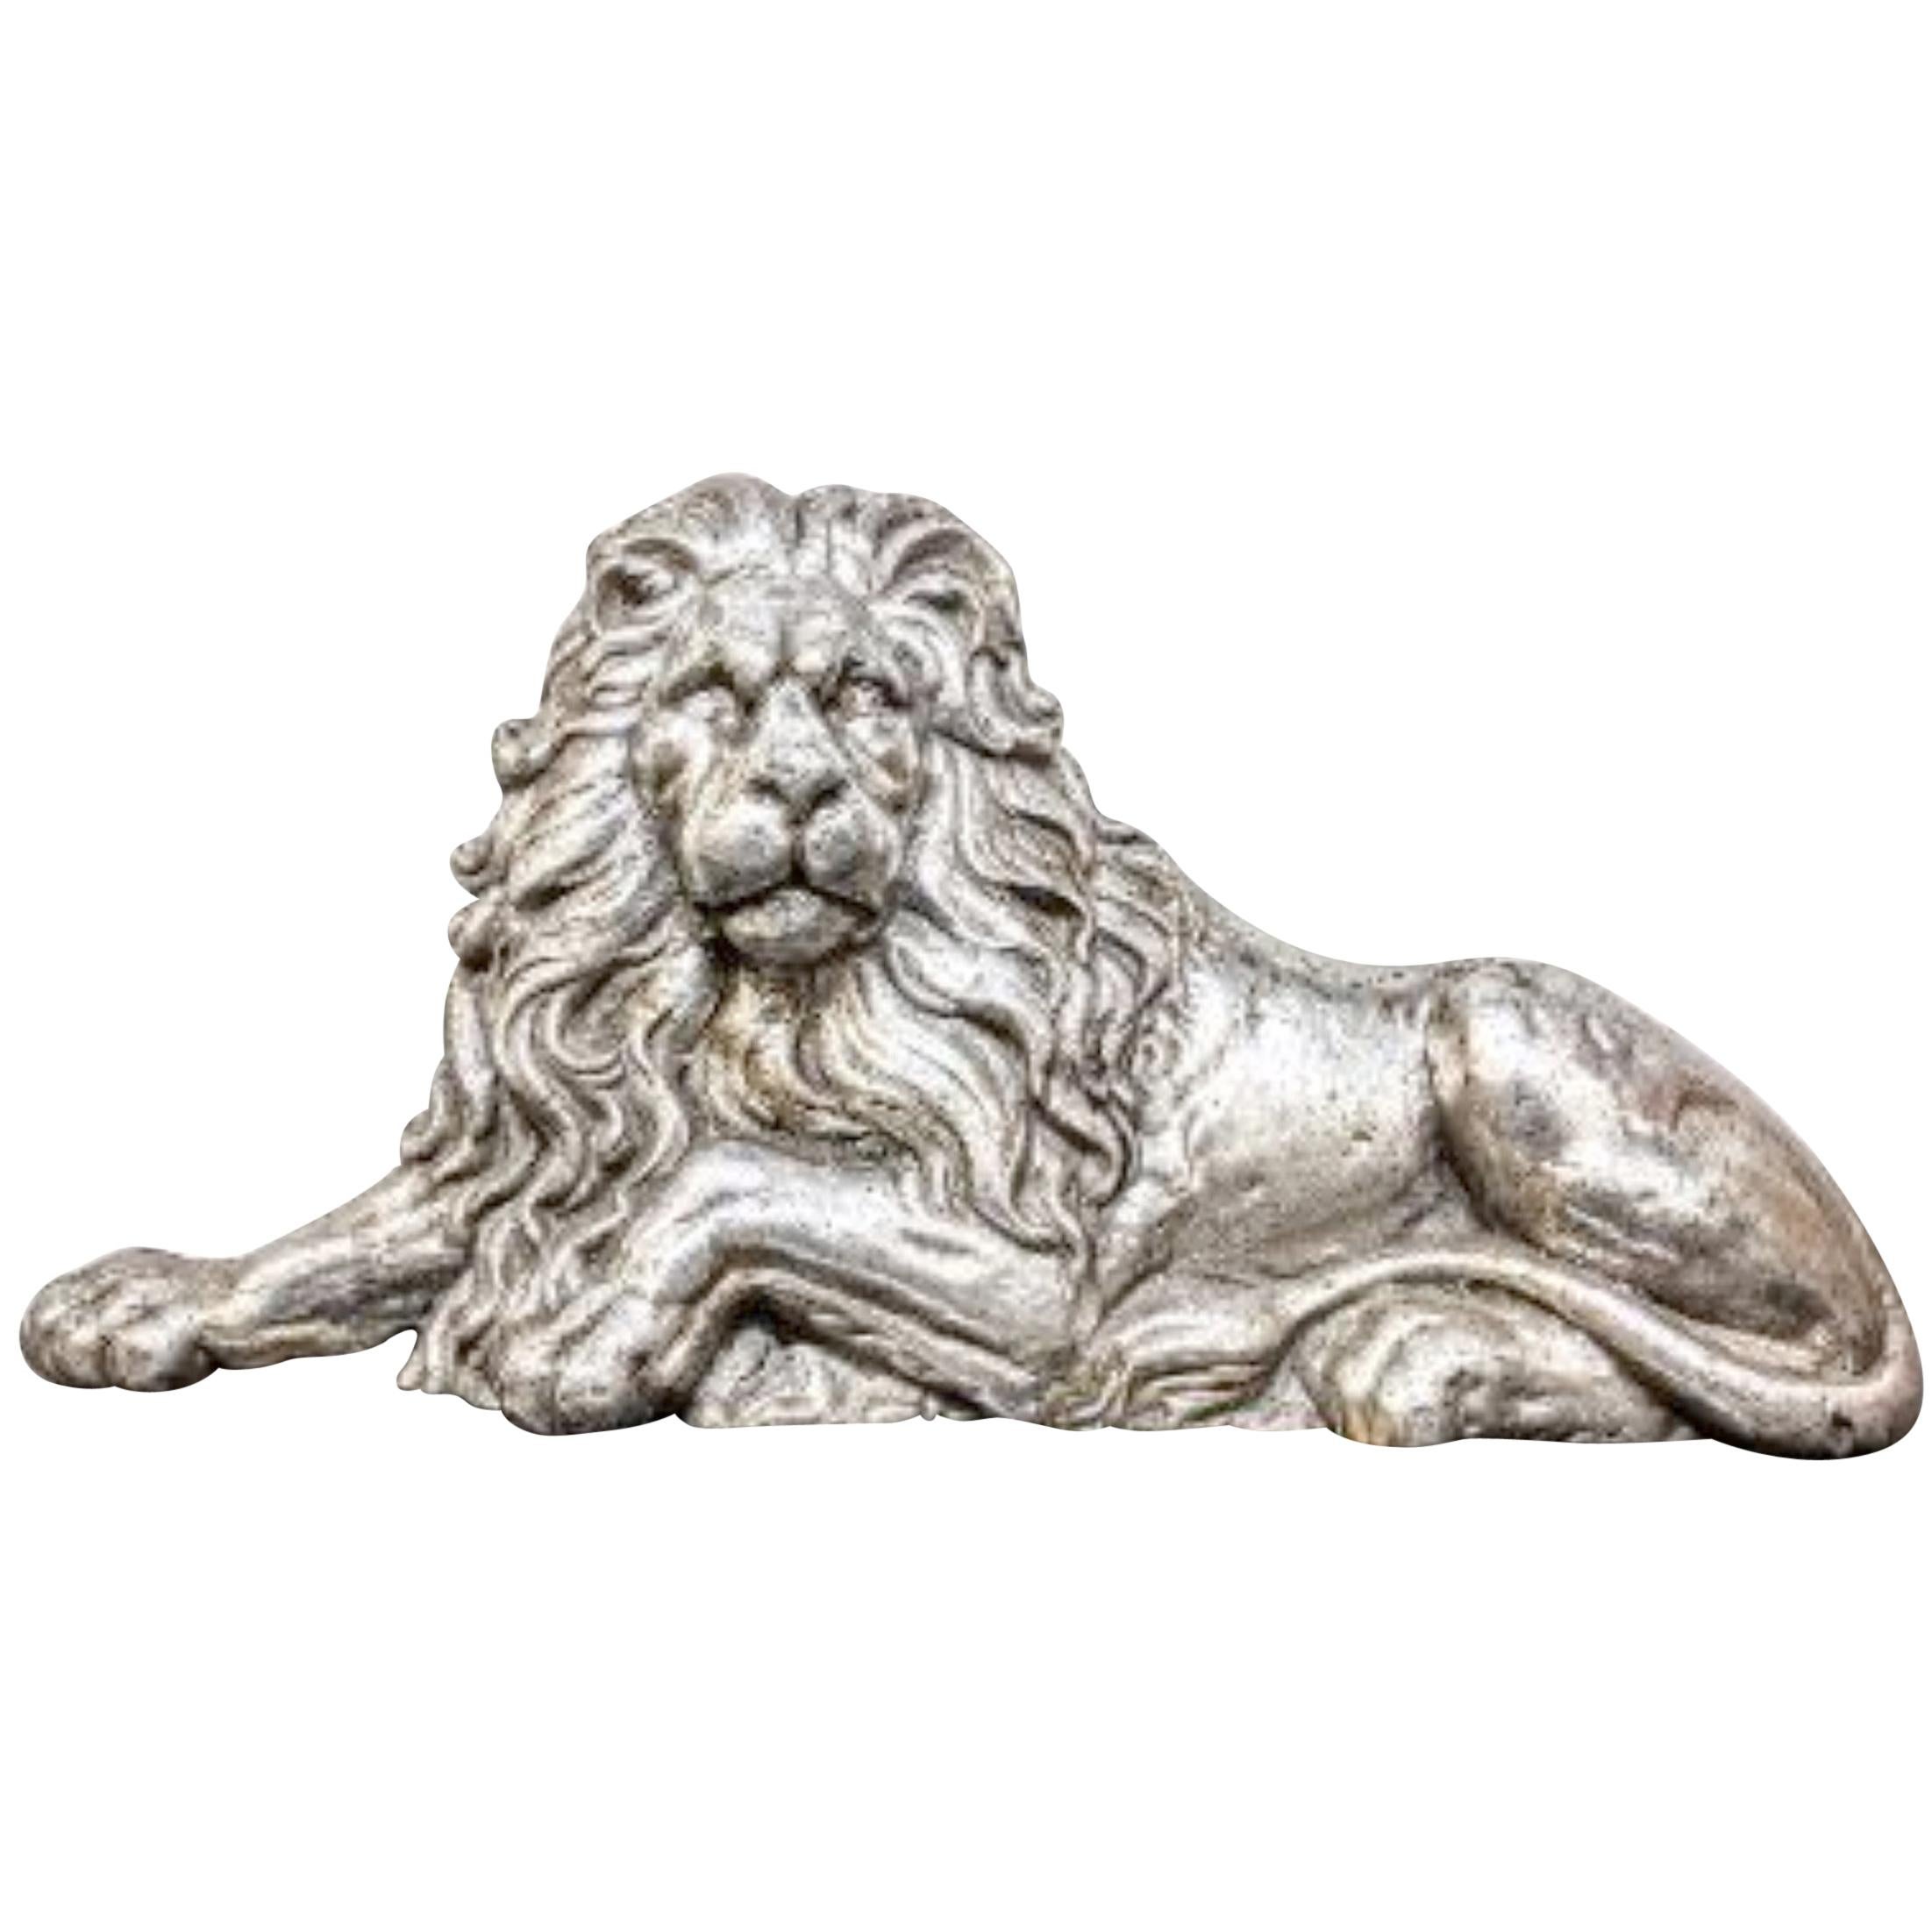 Aluminum Lion Sculpture For Sale